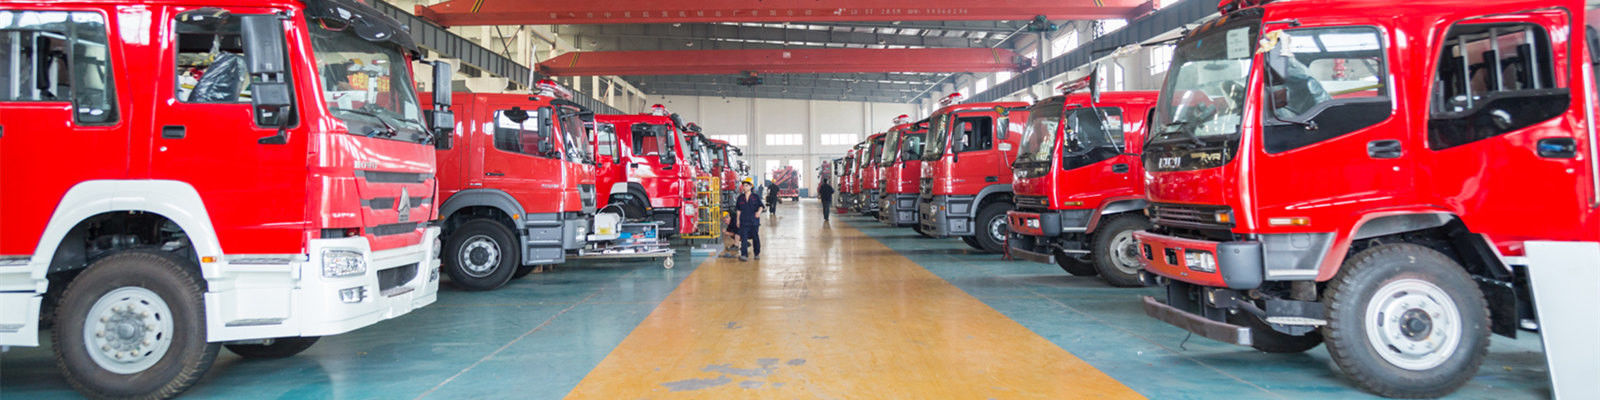 qualidade Carros de bombeiros comerciais fábrica